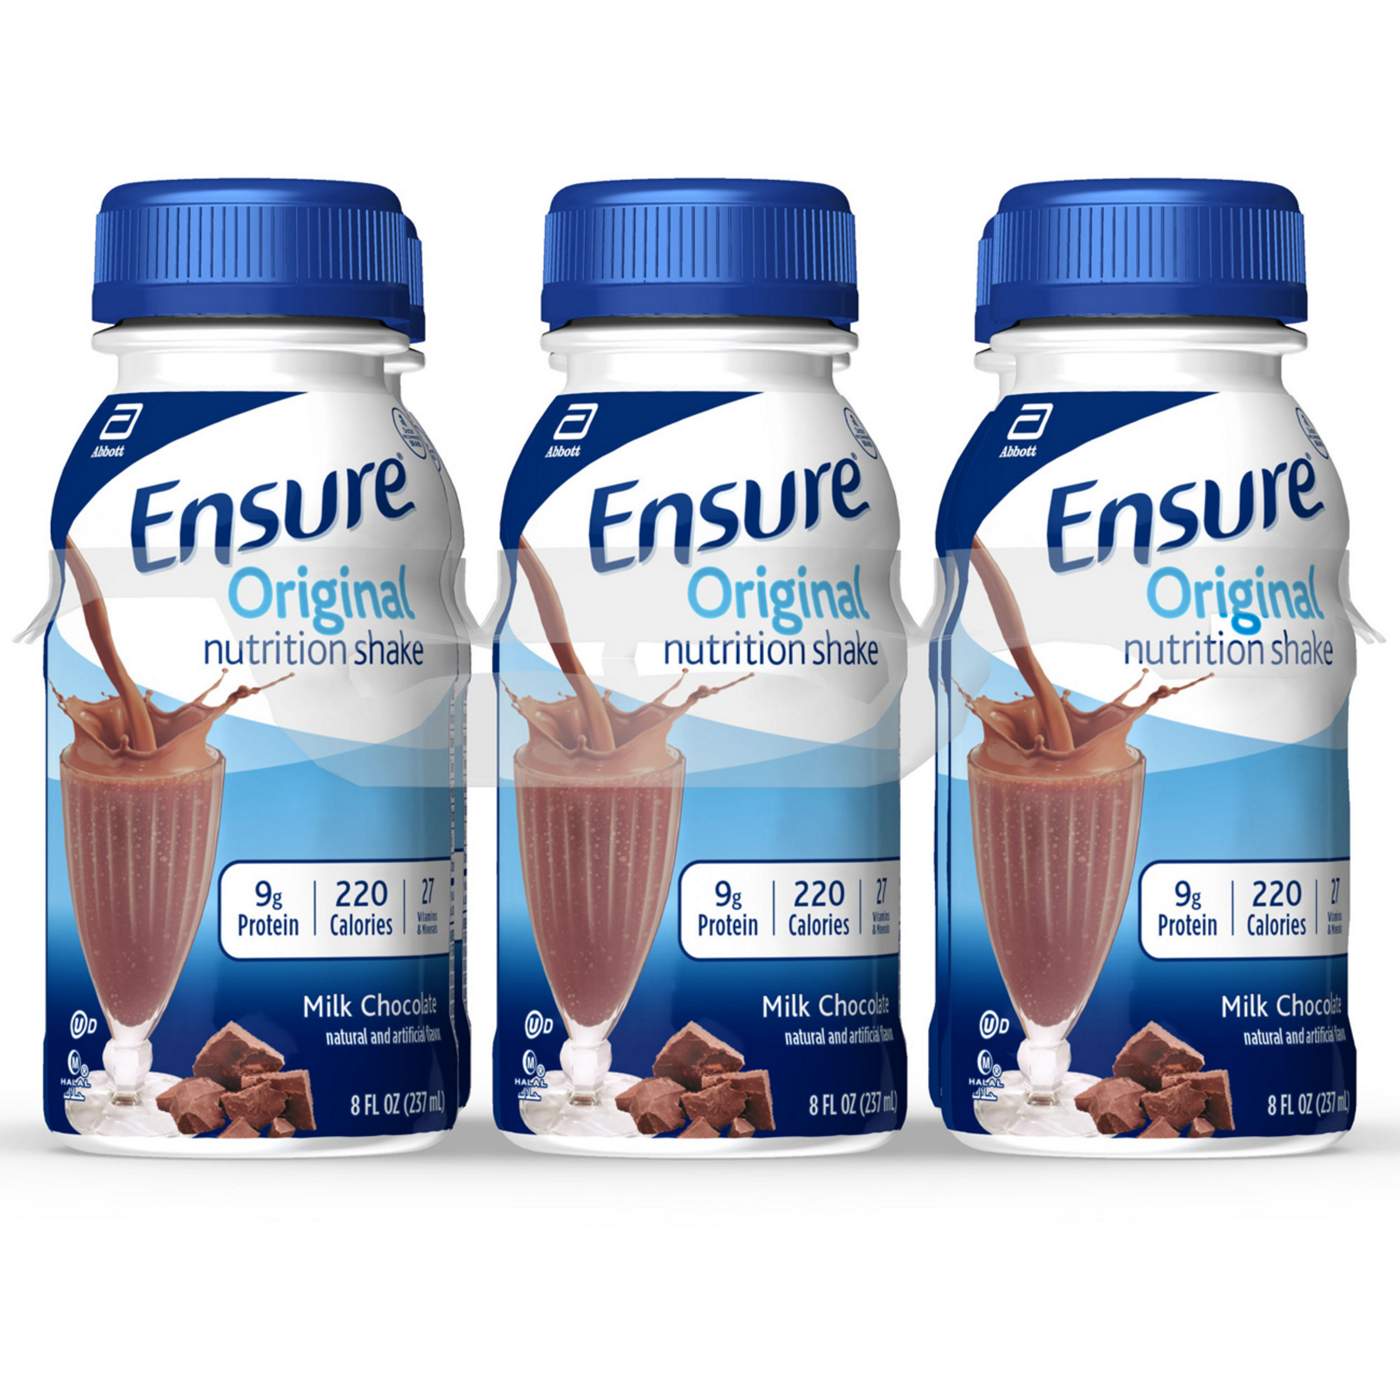 Ensure Original Nutrition Shake - Milk Chocolate, 6 pk; image 1 of 10